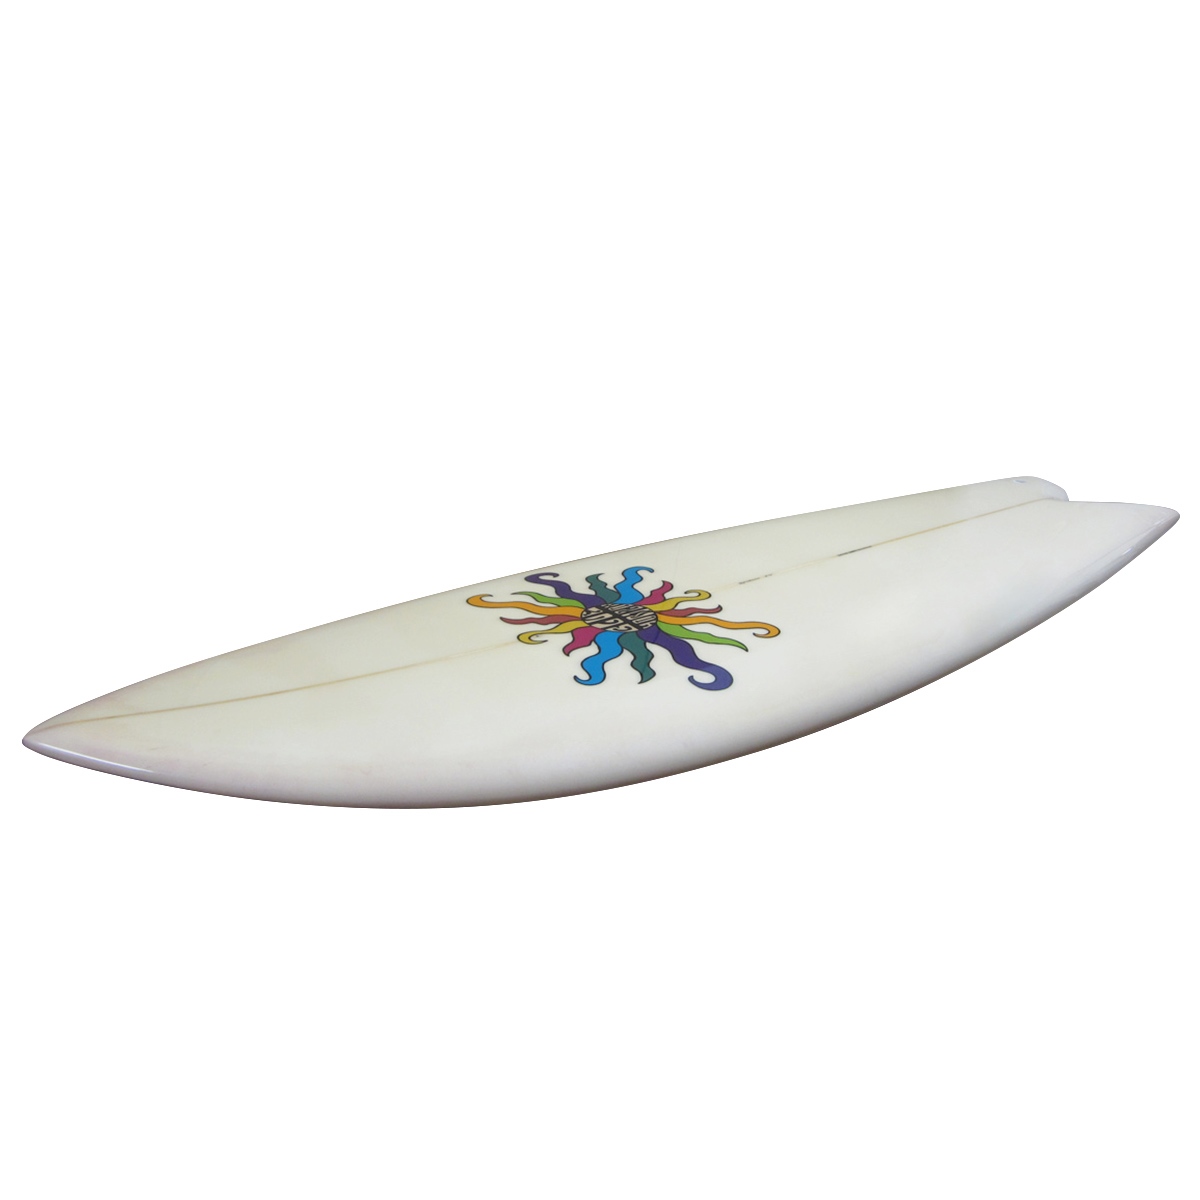 DEGAWA SURF / Fish 5'10 Shaped By Degawa